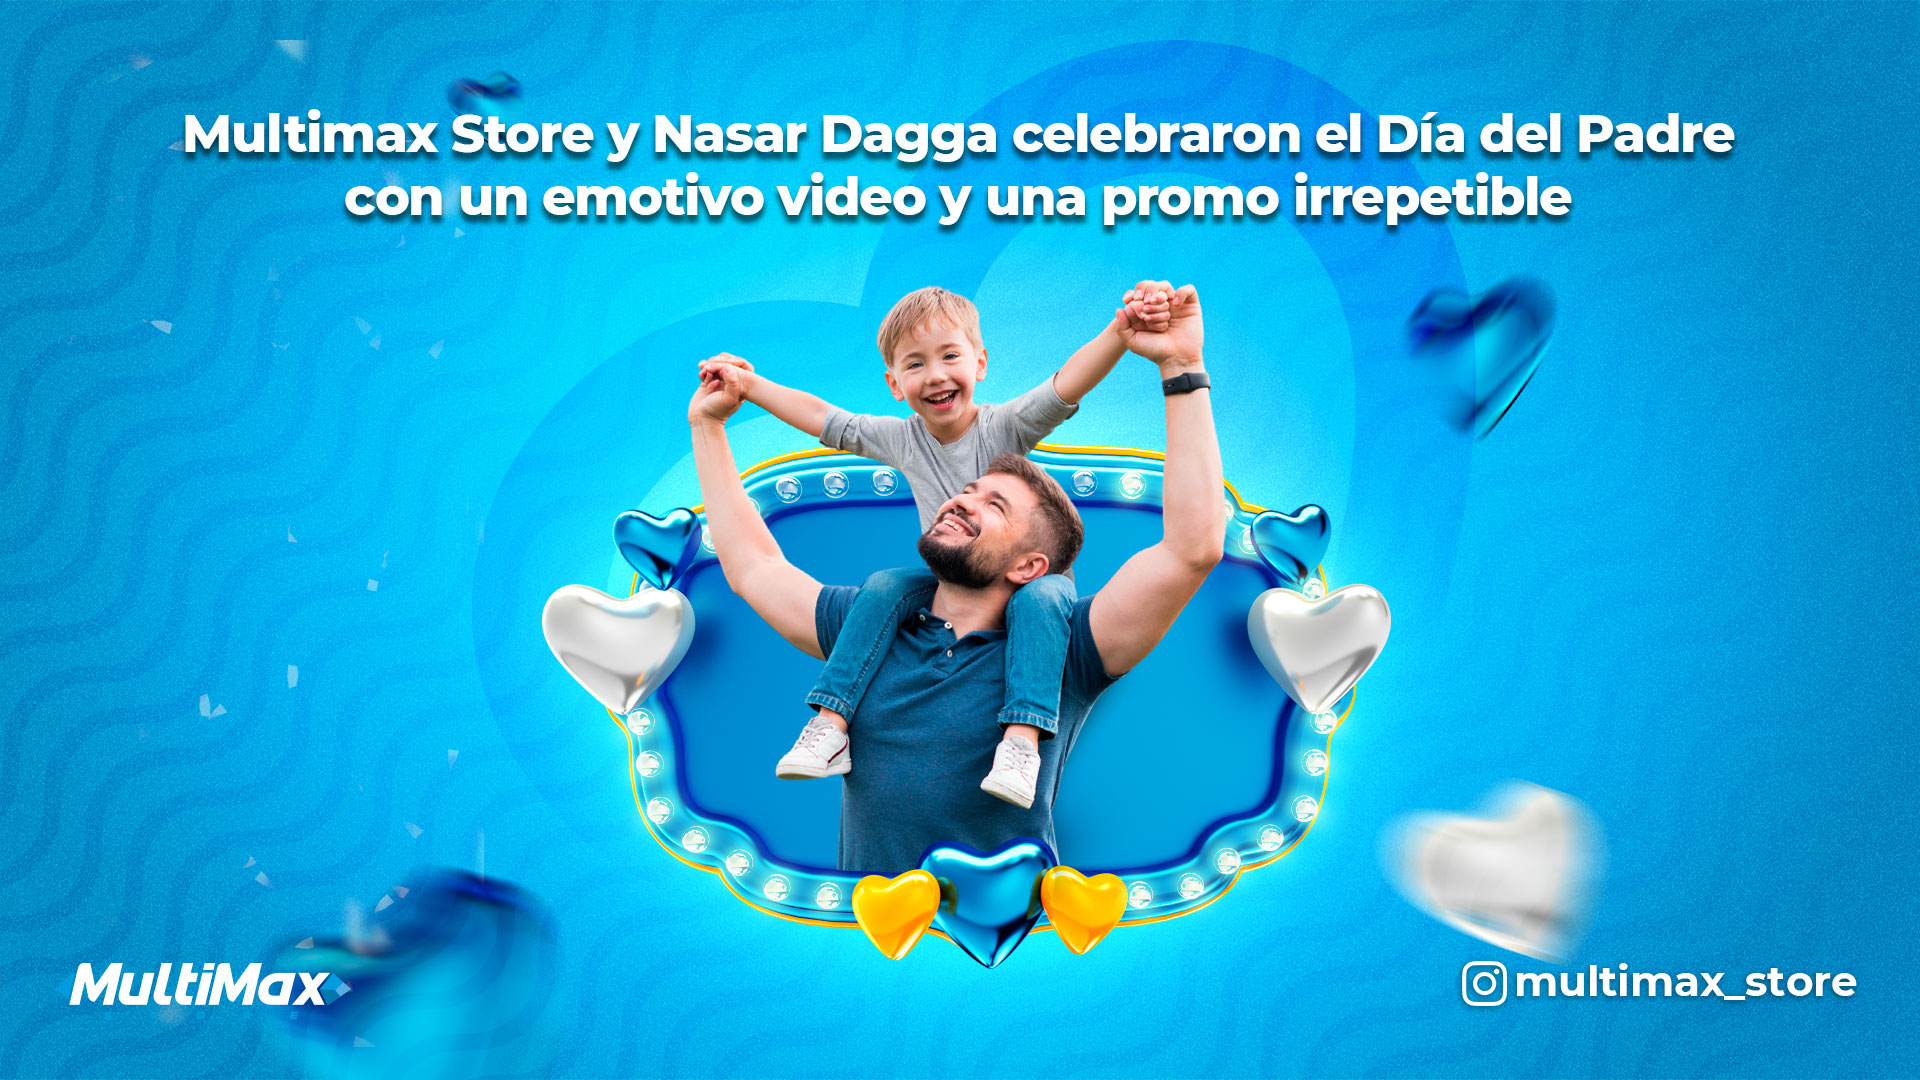 Multimax Store y Nasar Dagga celebraron el Día del Padre con un emotivo video y una promo irrepetible